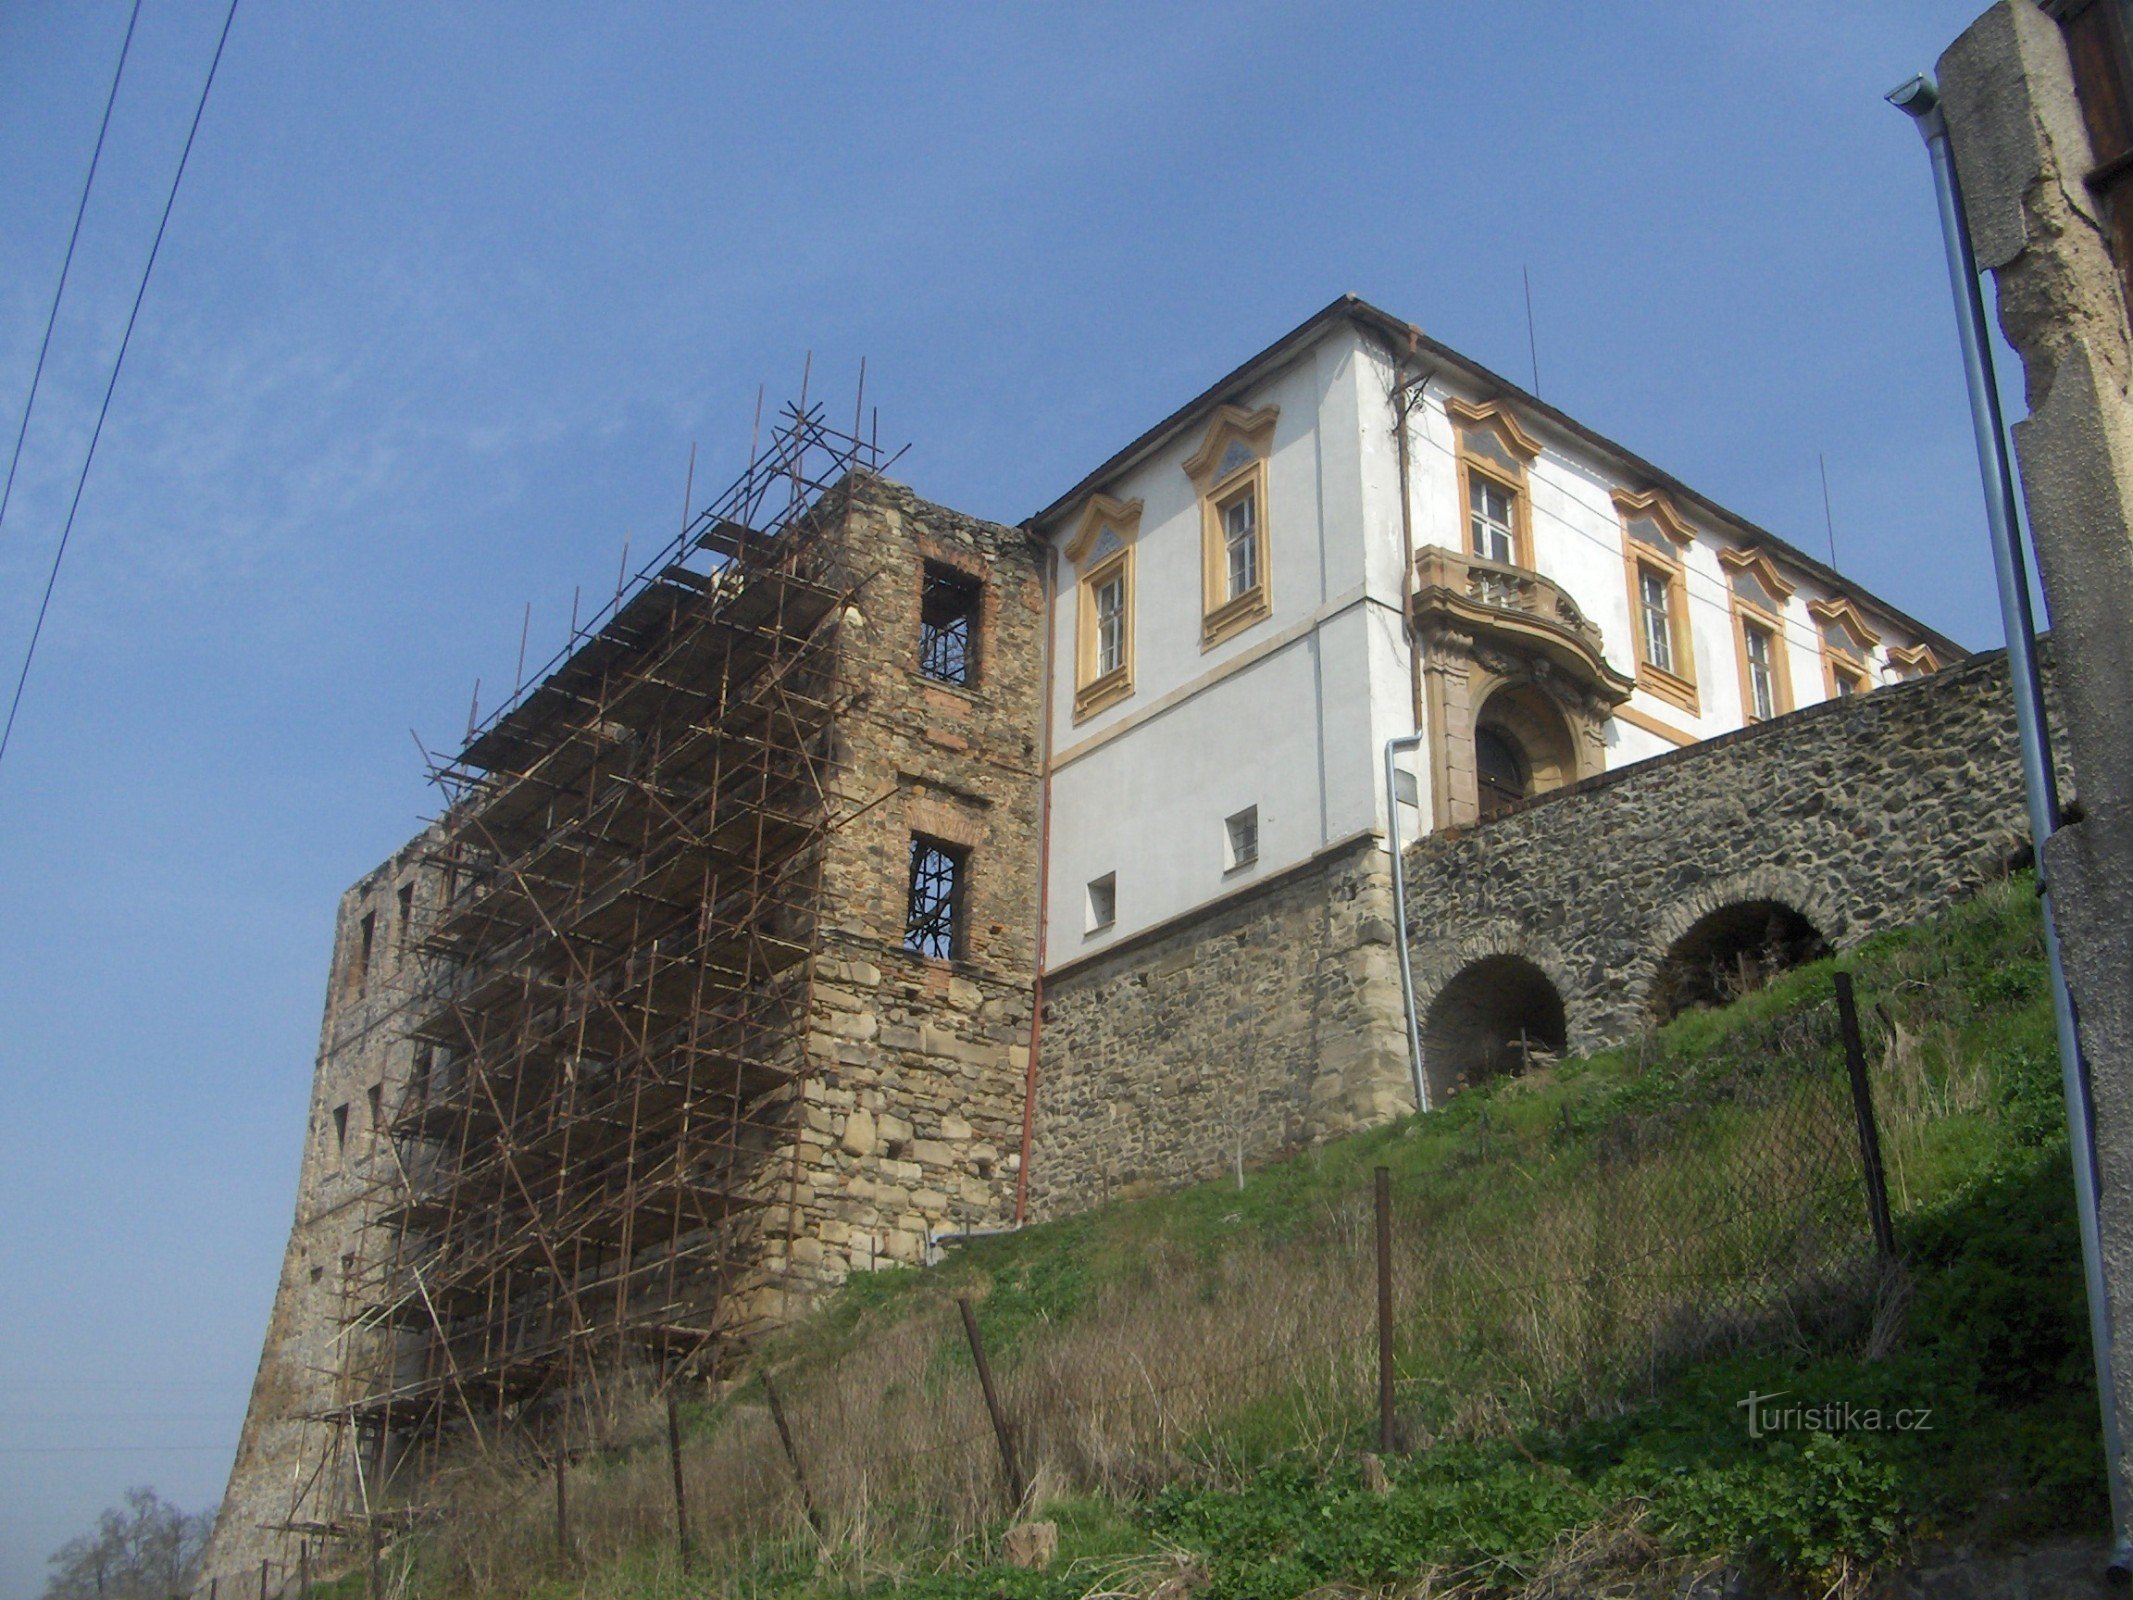 Незданий замок у Хватерубах